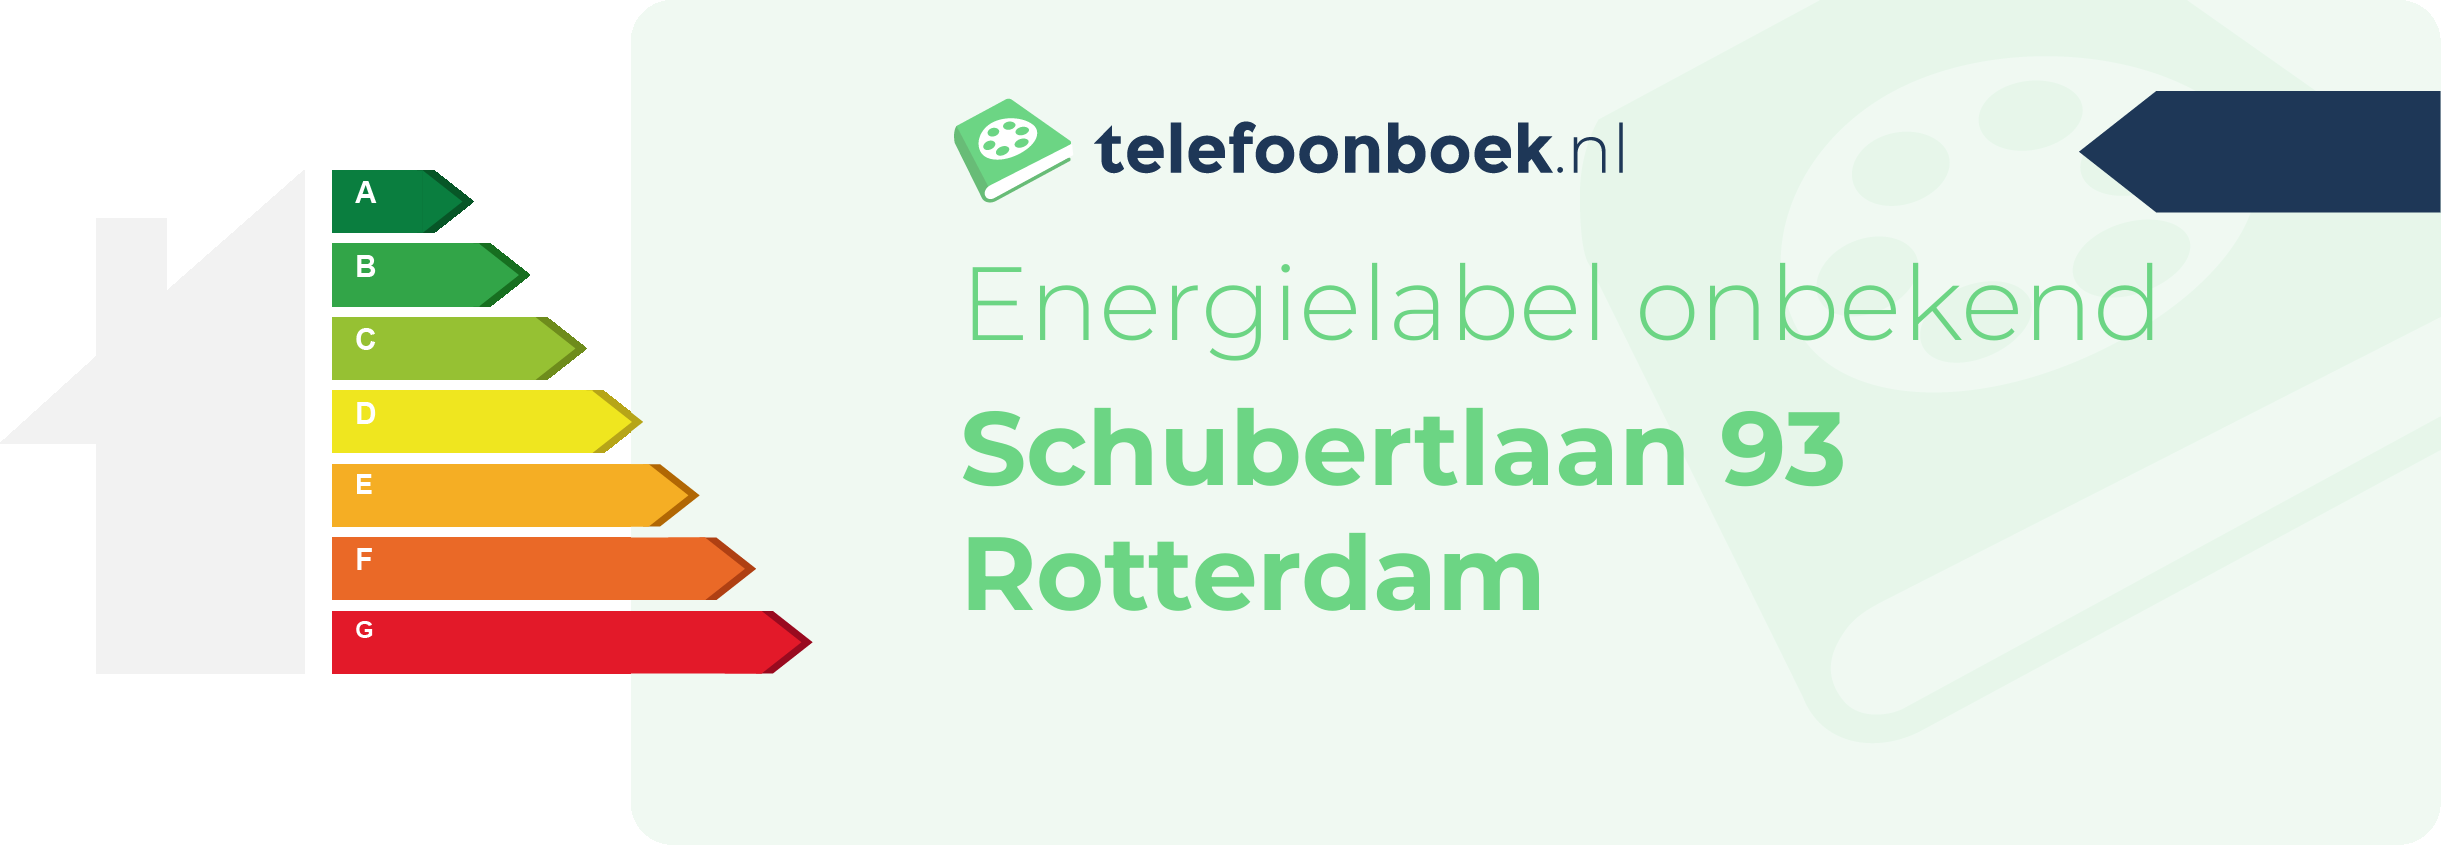 Energielabel Schubertlaan 93 Rotterdam